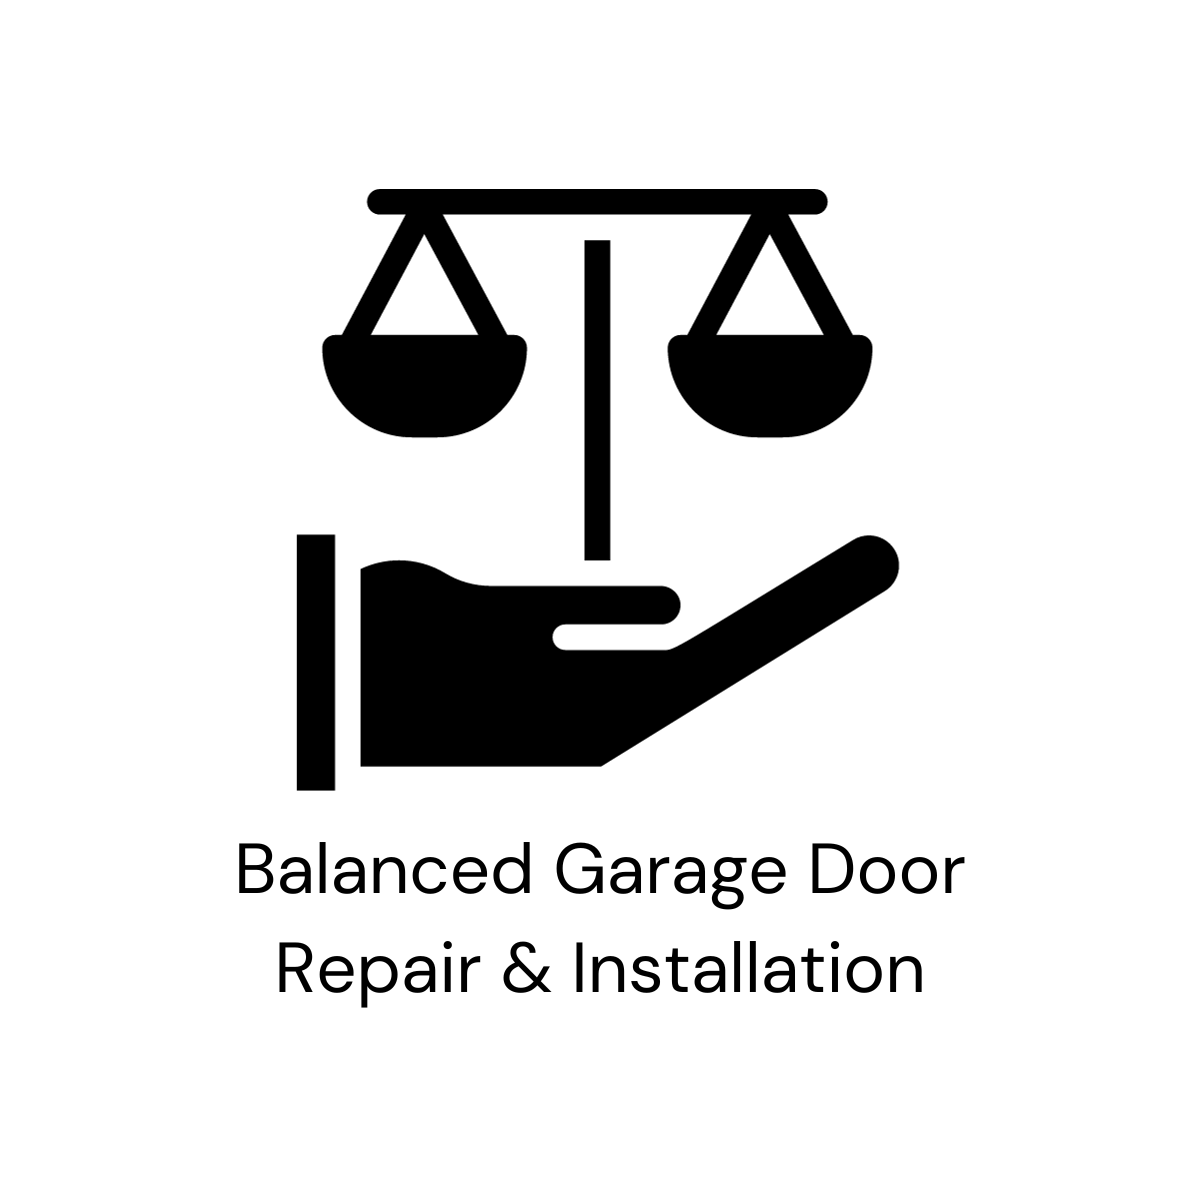 Balanced Garage Door Repair & Installation